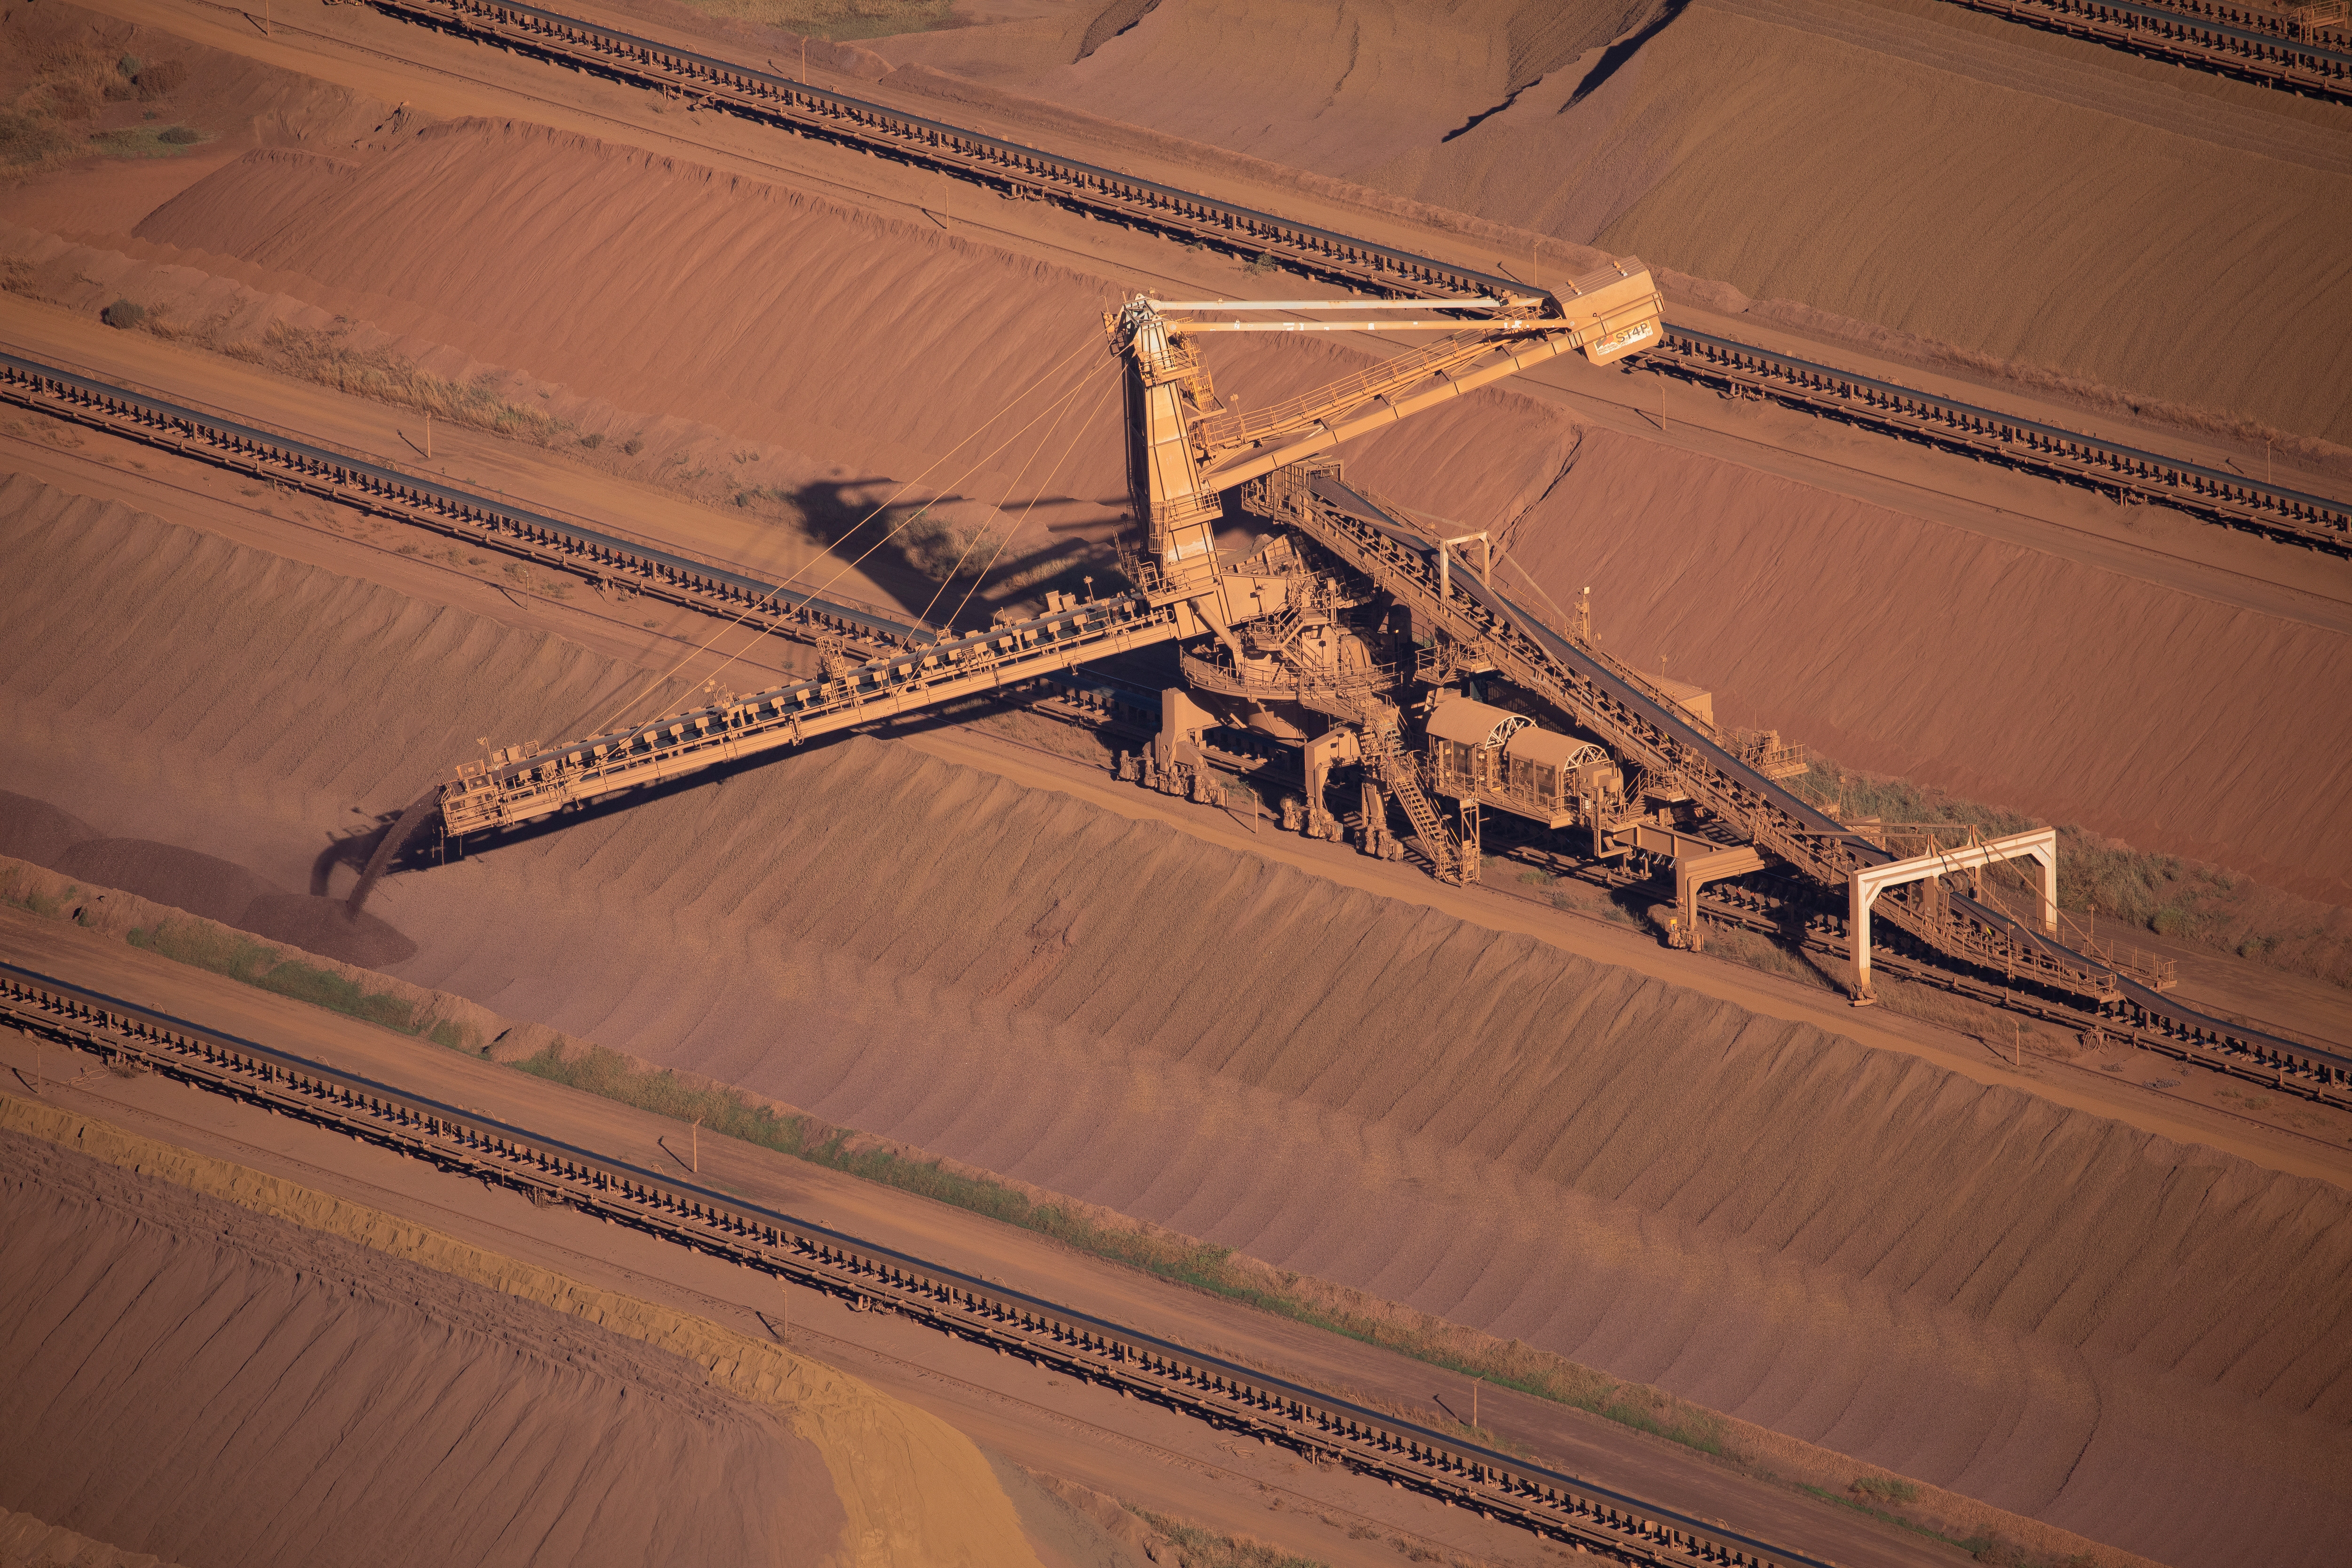 An iron ore stacker feeds stockpiles at Rio Tinto iron ore mine site in the Pilbara region of Western Australia.